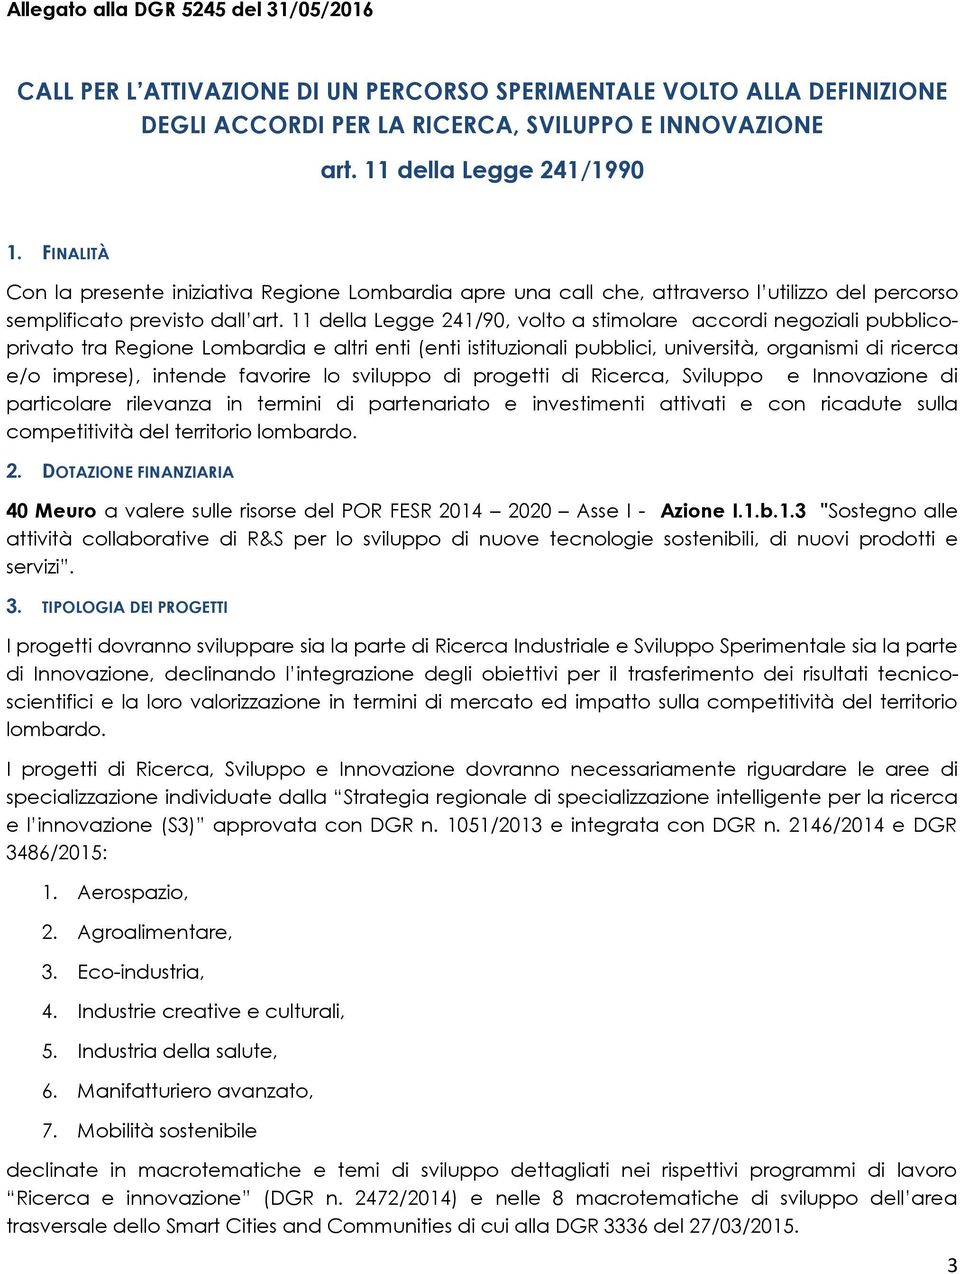 11 della Legge 241/90, volto a stimolare accordi negoziali pubblicoprivato tra Regione Lombardia e altri enti (enti istituzionali pubblici, università, organismi di ricerca e/o imprese), intende